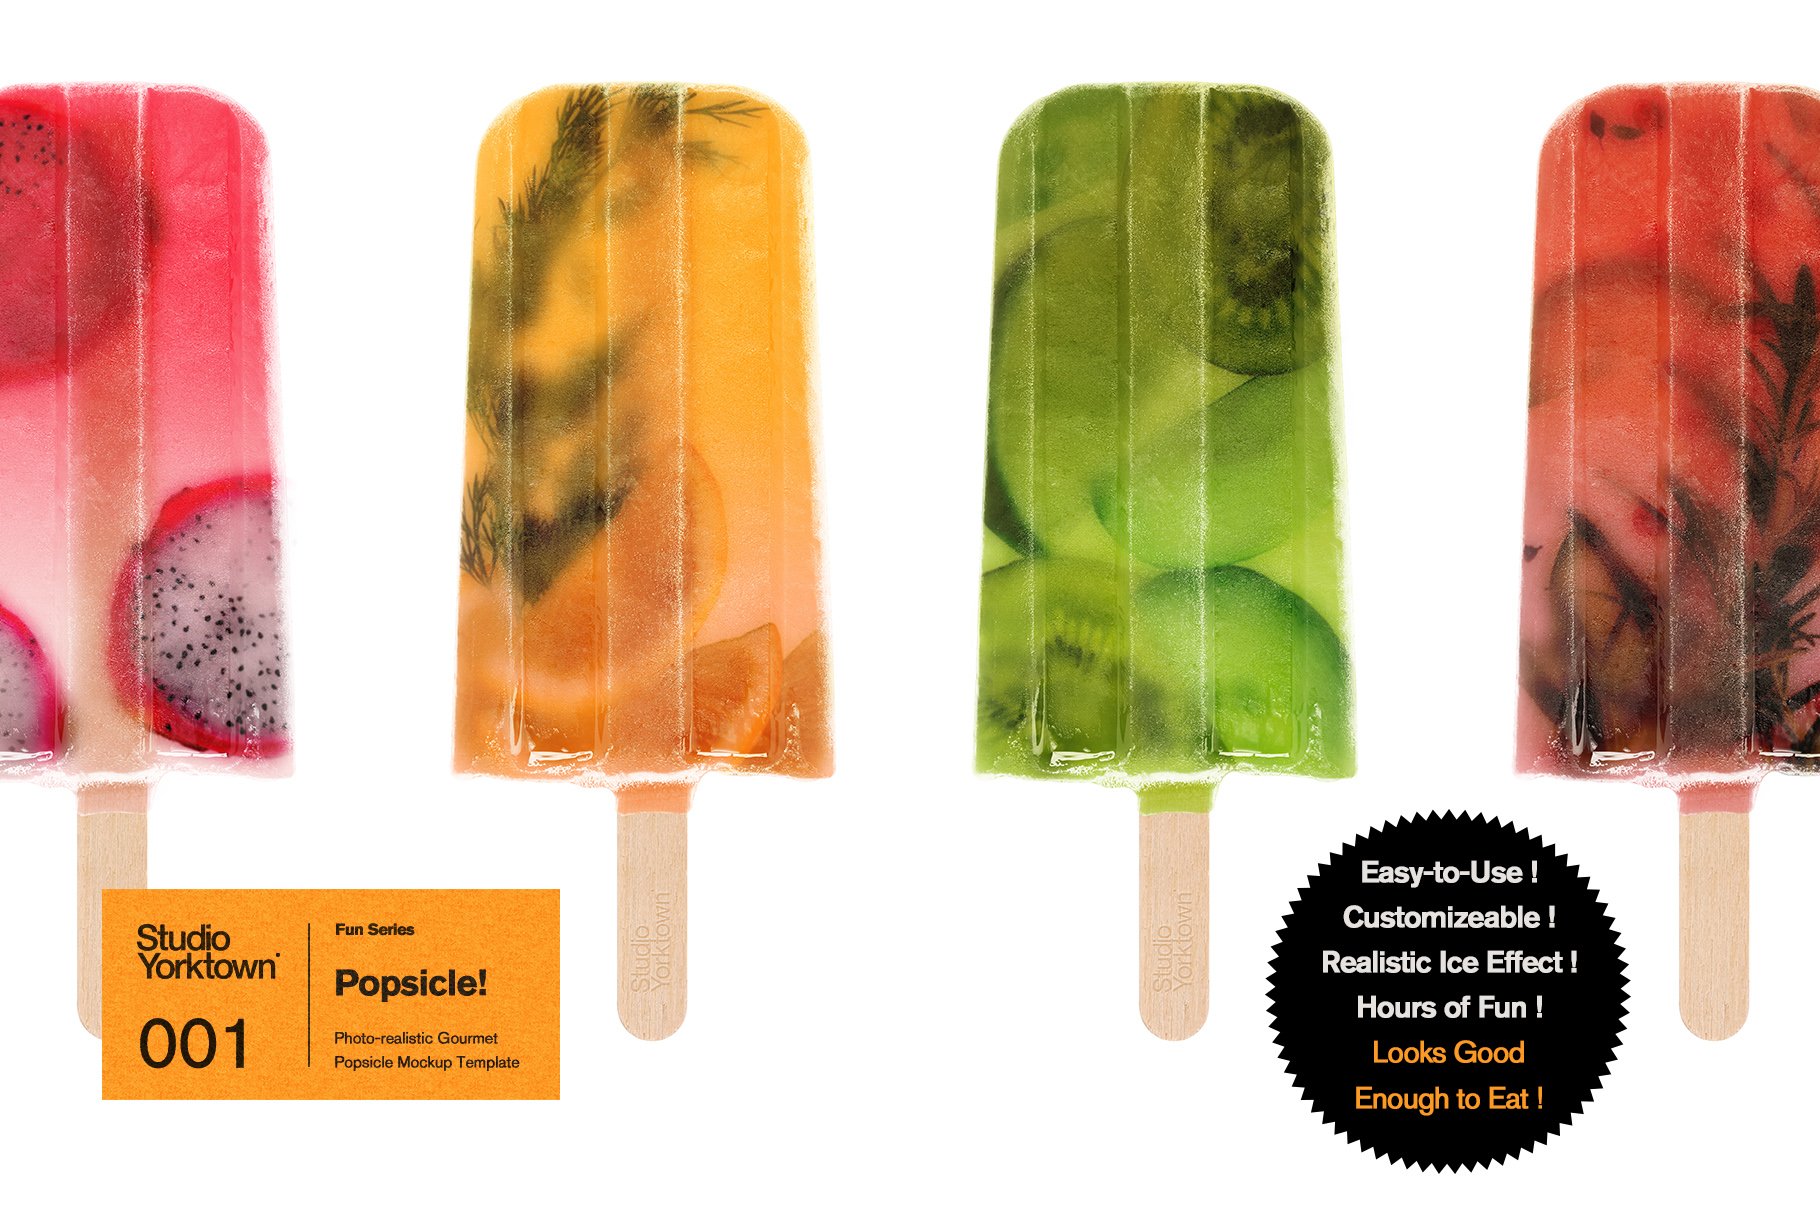 夏季夏天冰棍冰淇淋产品贴图样机模板素材 Popsicle!